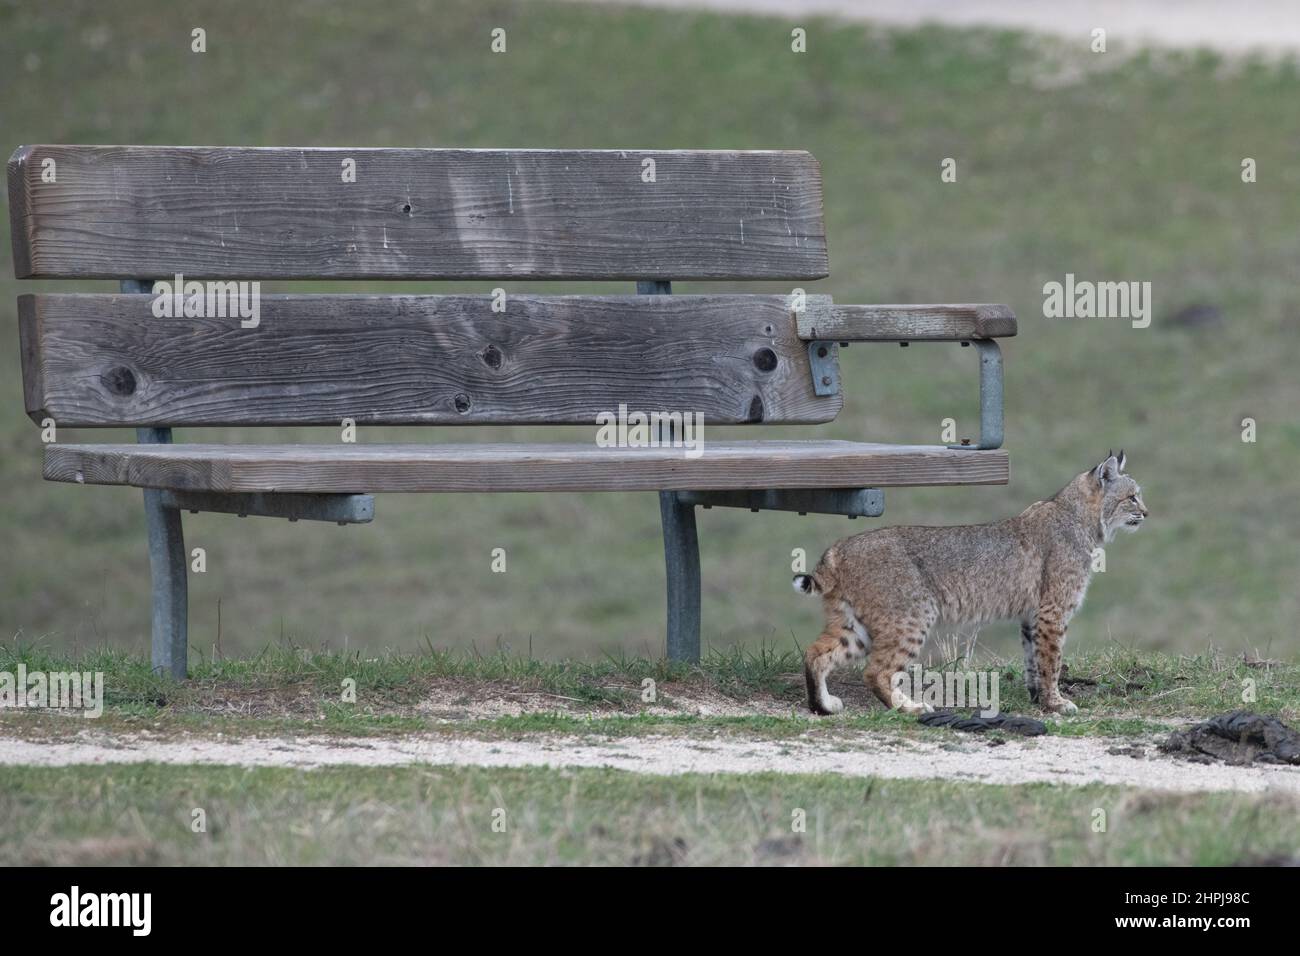 Un gato montés (Lynx rufus) está al lado de un banco del parque mostrando lo pequeño que es, los observadores a menudo sobreestiman el tamaño de estos gatos. Foto de stock